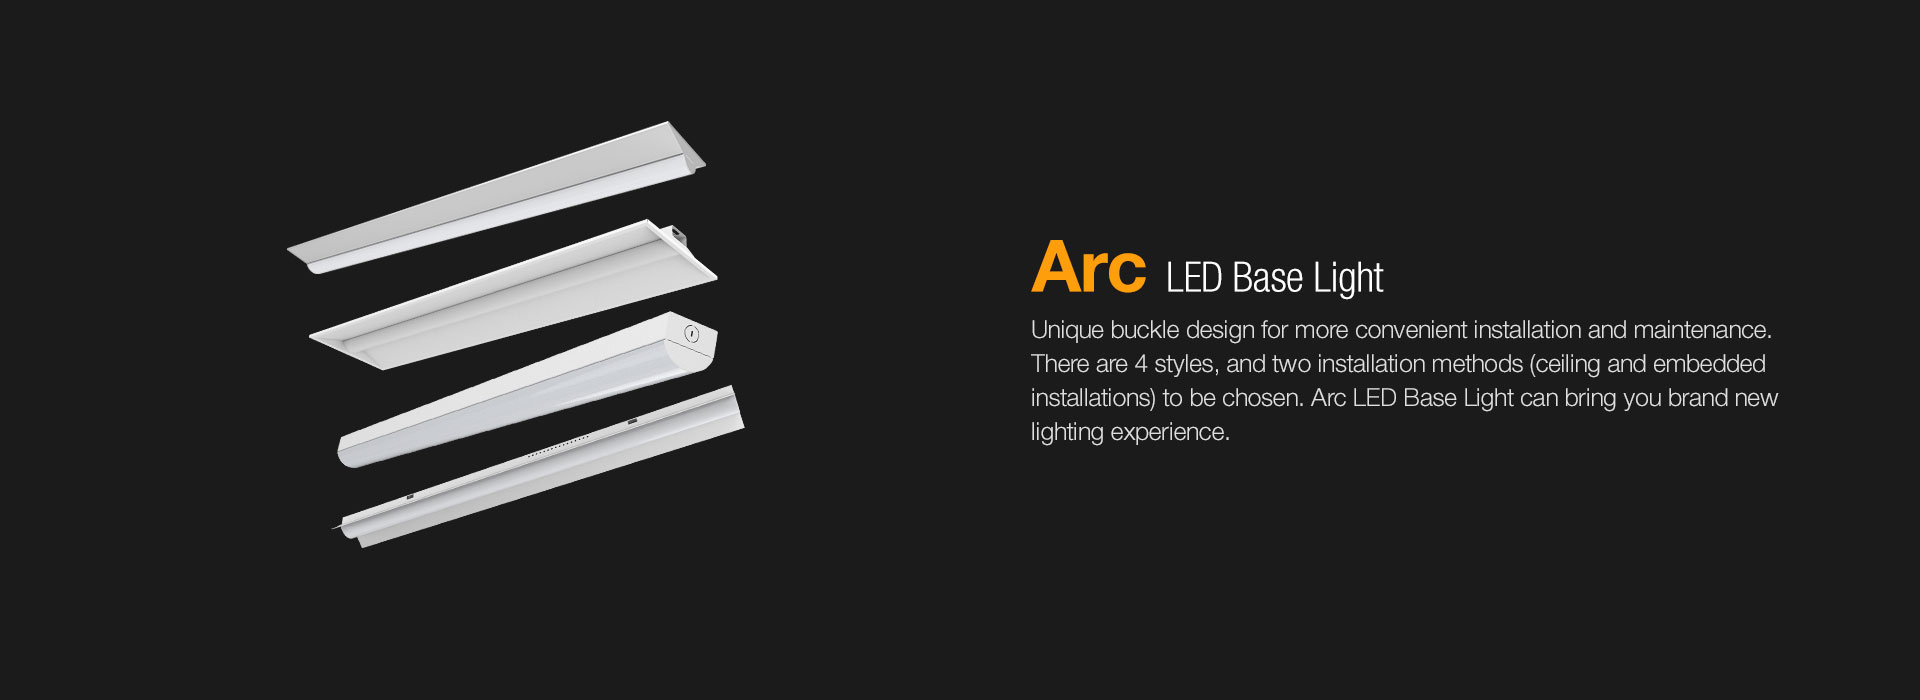 ARC LED Base Light